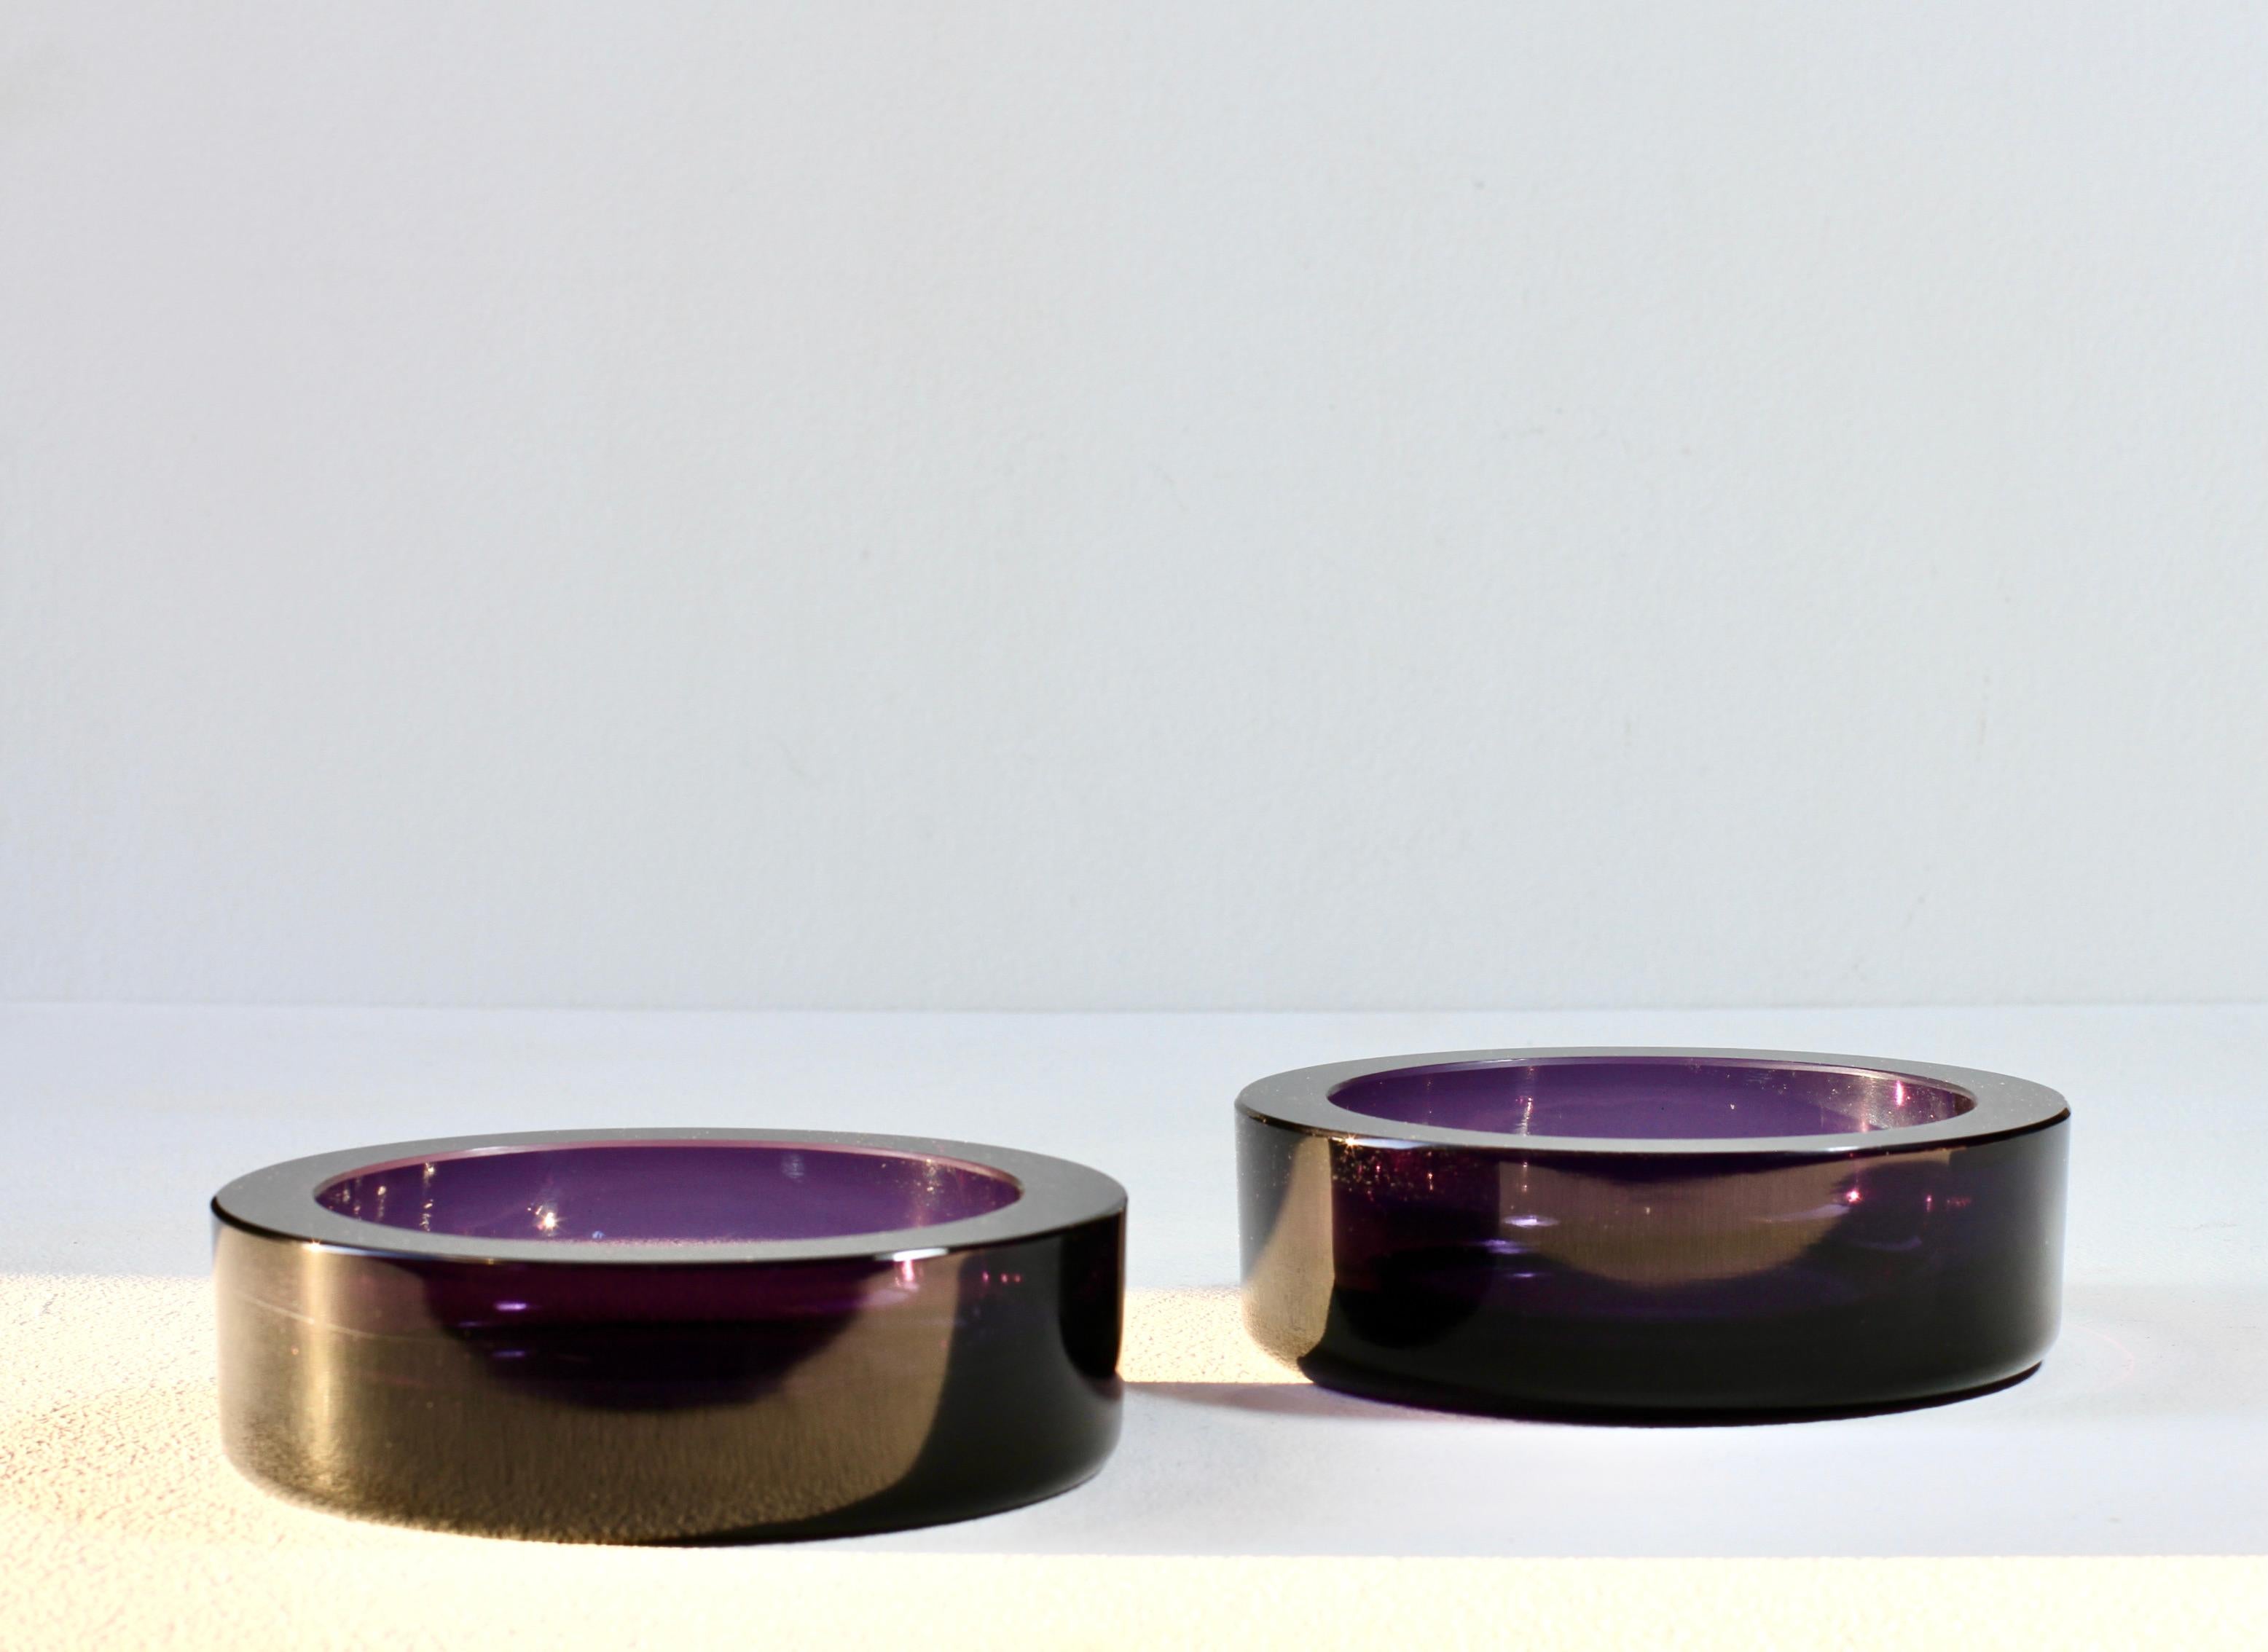 Seltenes Paar venezianischer Mid-Century vintage modern Murano violett gefärbt / farbiges Glas runde runde Gerichte, Schalen oder Aschenbecher. Wunderschönes italienisches Glas aus der Jahrhundertmitte, perfekt zum Servieren von Süßigkeiten oder